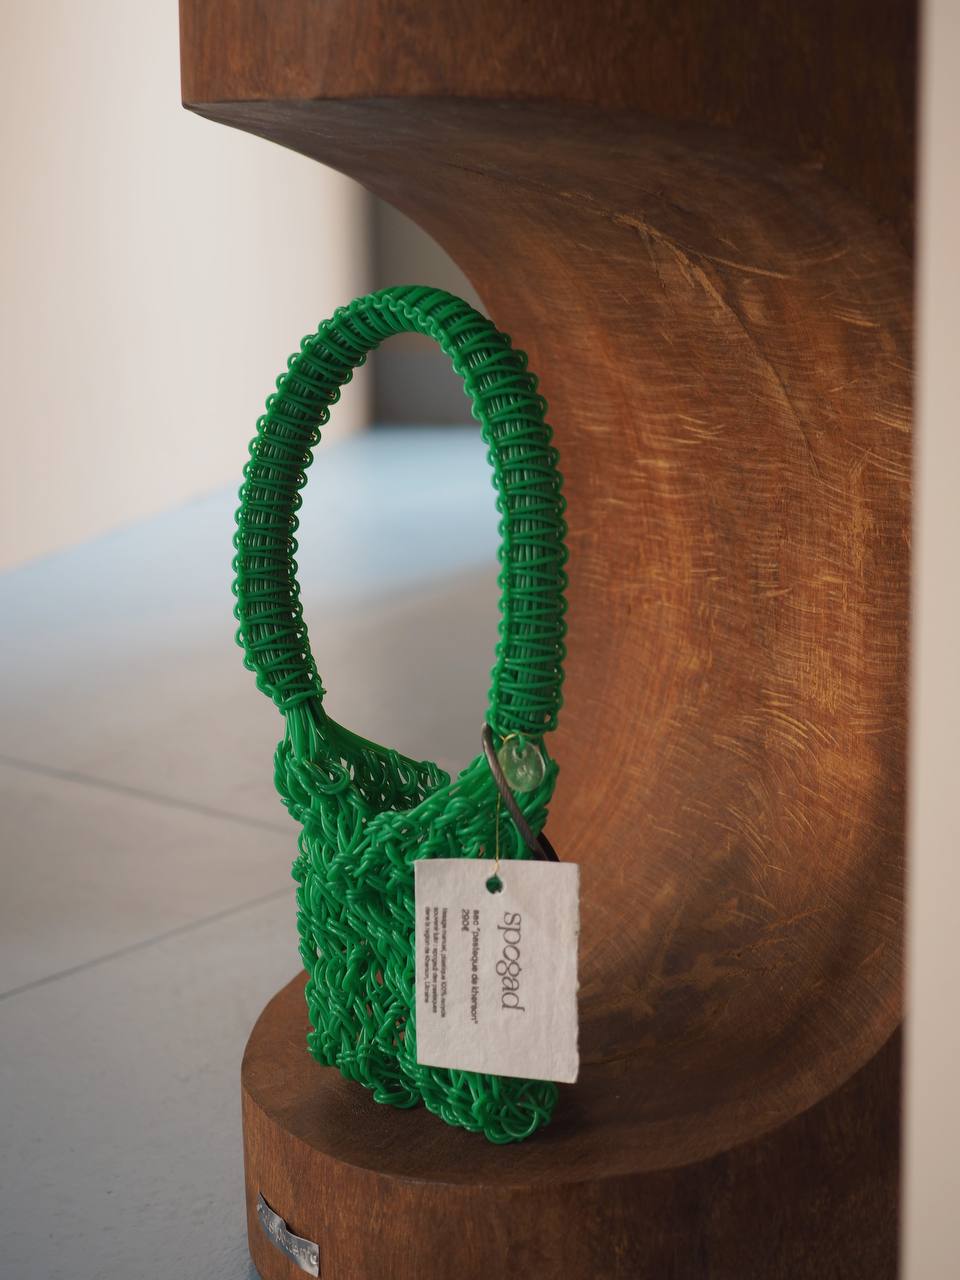 SPOGAD: український бренд зі стильними аксесуарами з локально переробленого пластику, завойовує світове визнання в ексклюзивному Fashion Green Room Printemps Haussmann Paris.